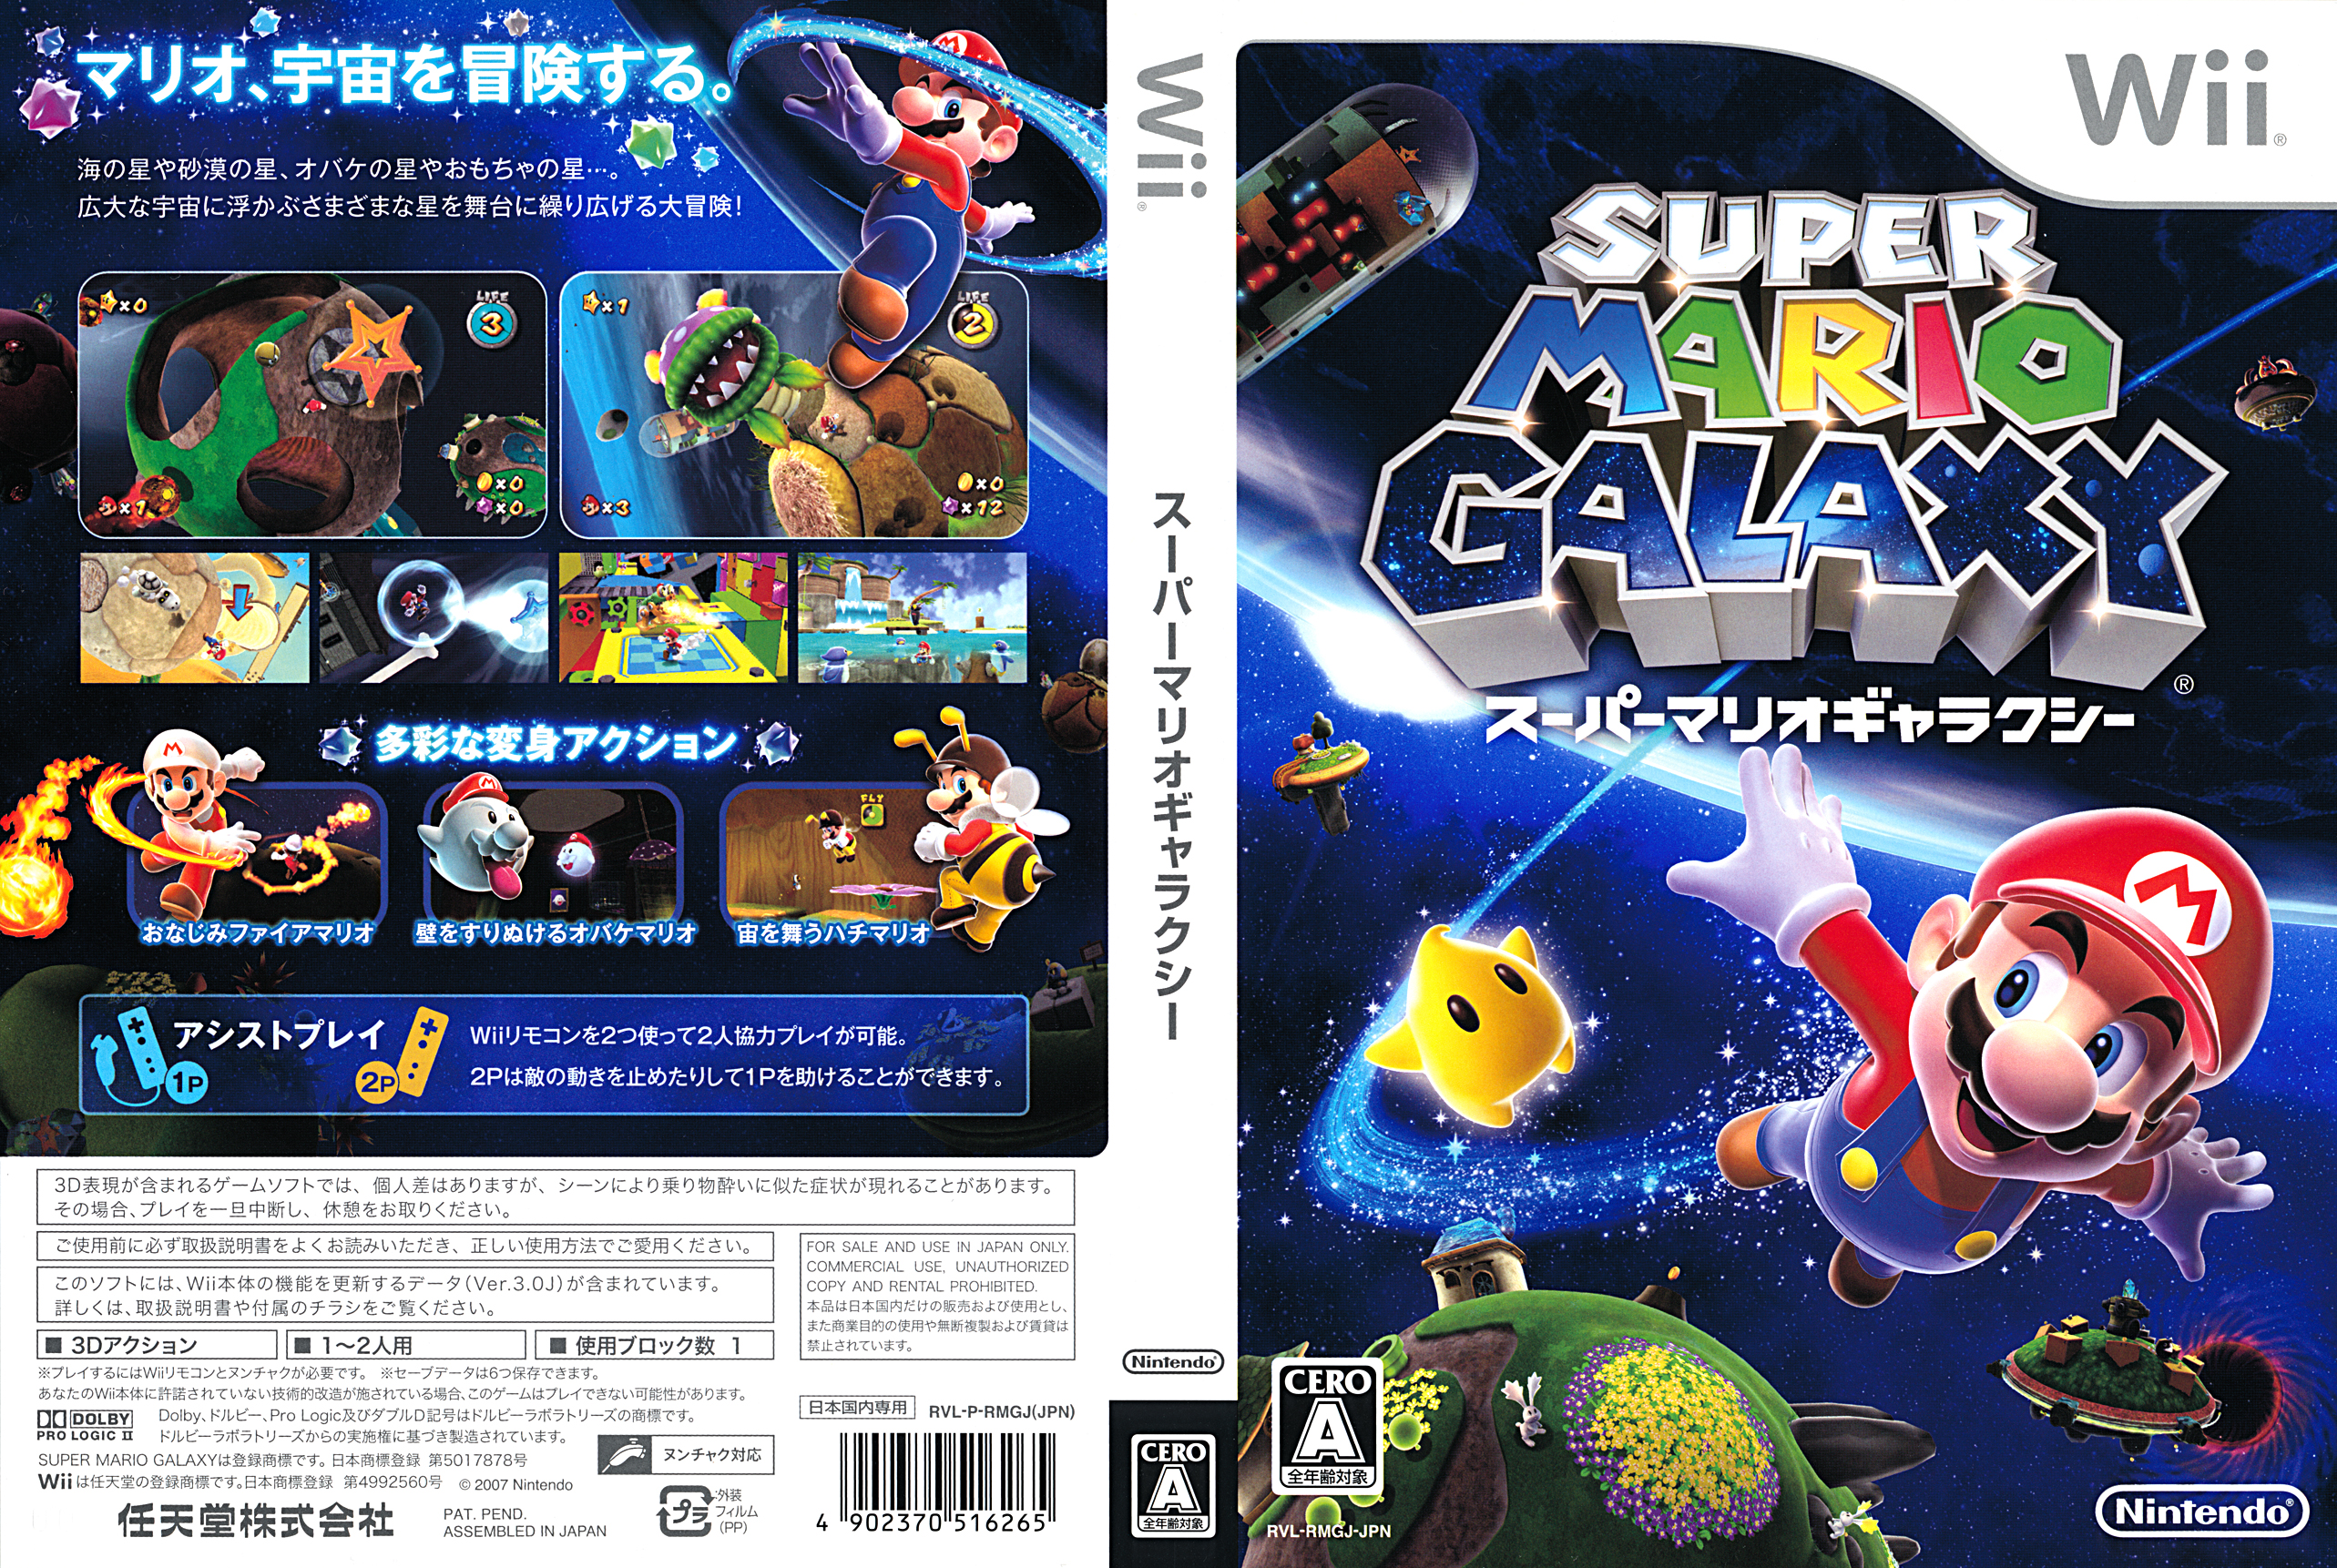 Super Mario Galaxy 2 Wii. Super Mario Galaxy Wii Cover. Super Mario Galaxy (Rus) Wii обложка. . Super Mario Galaxy platform: Wii. Mario galaxy wii